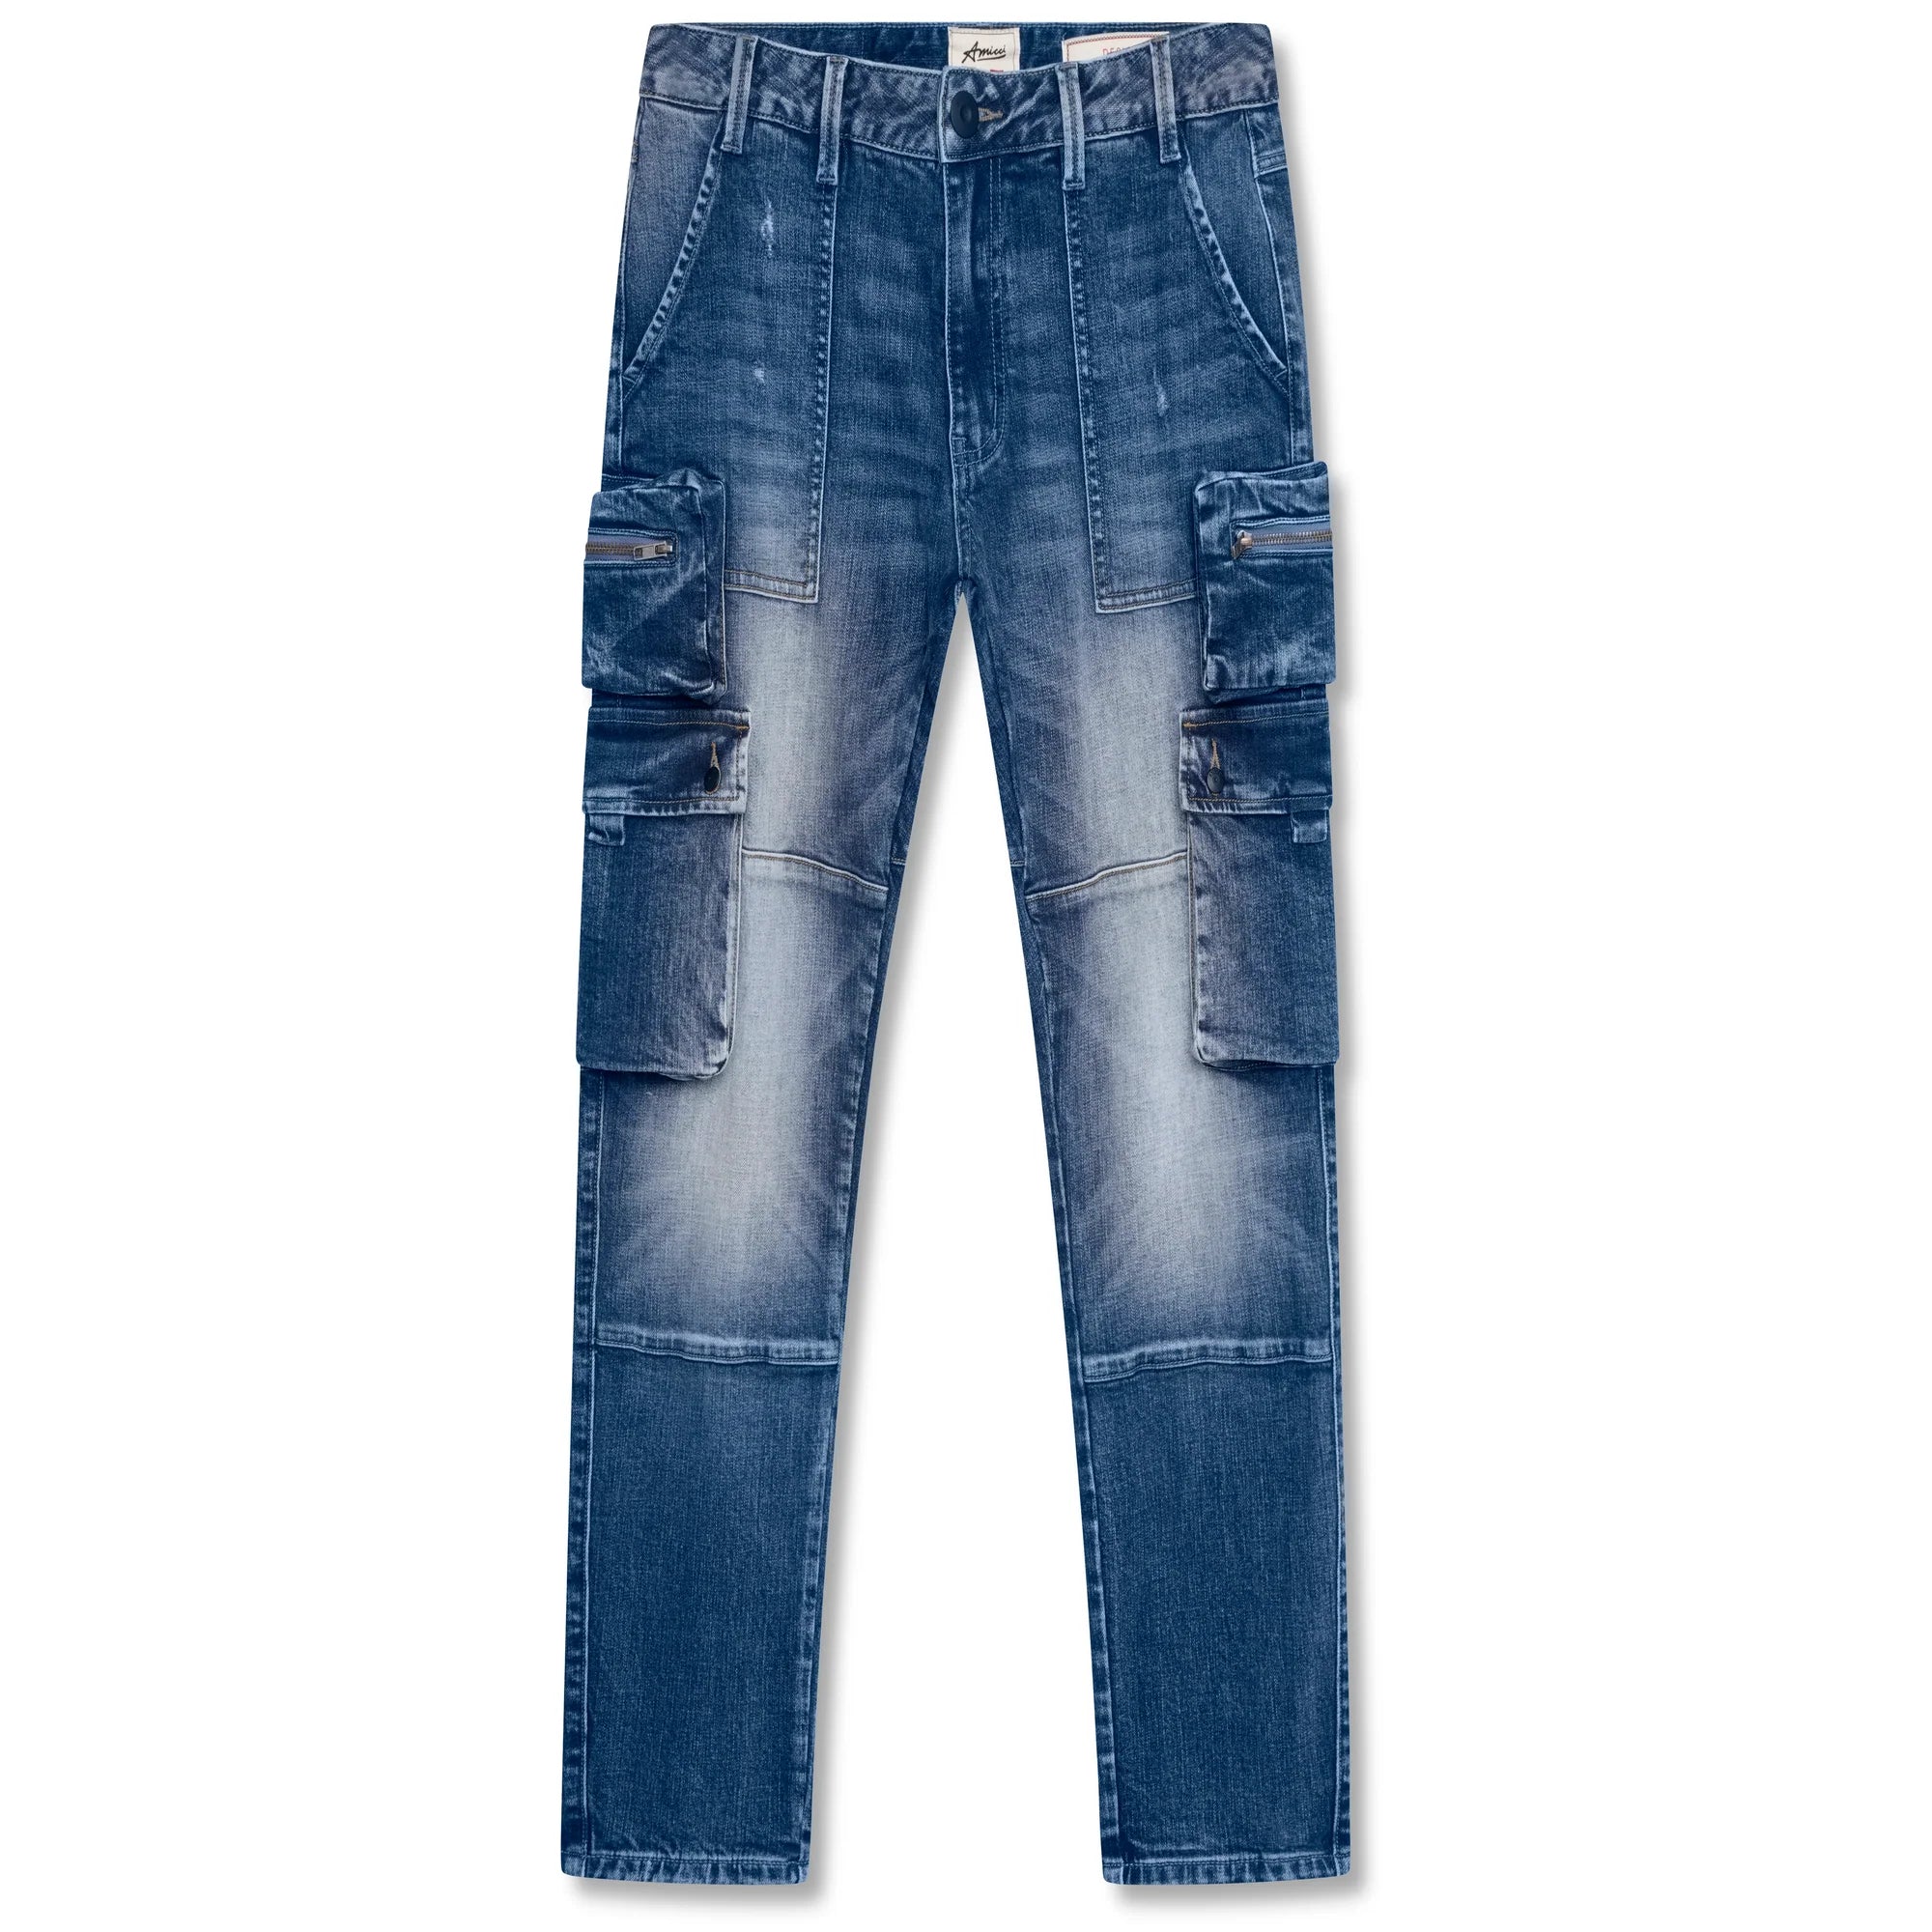 Amicci Cassara Cargo Jeans Blue